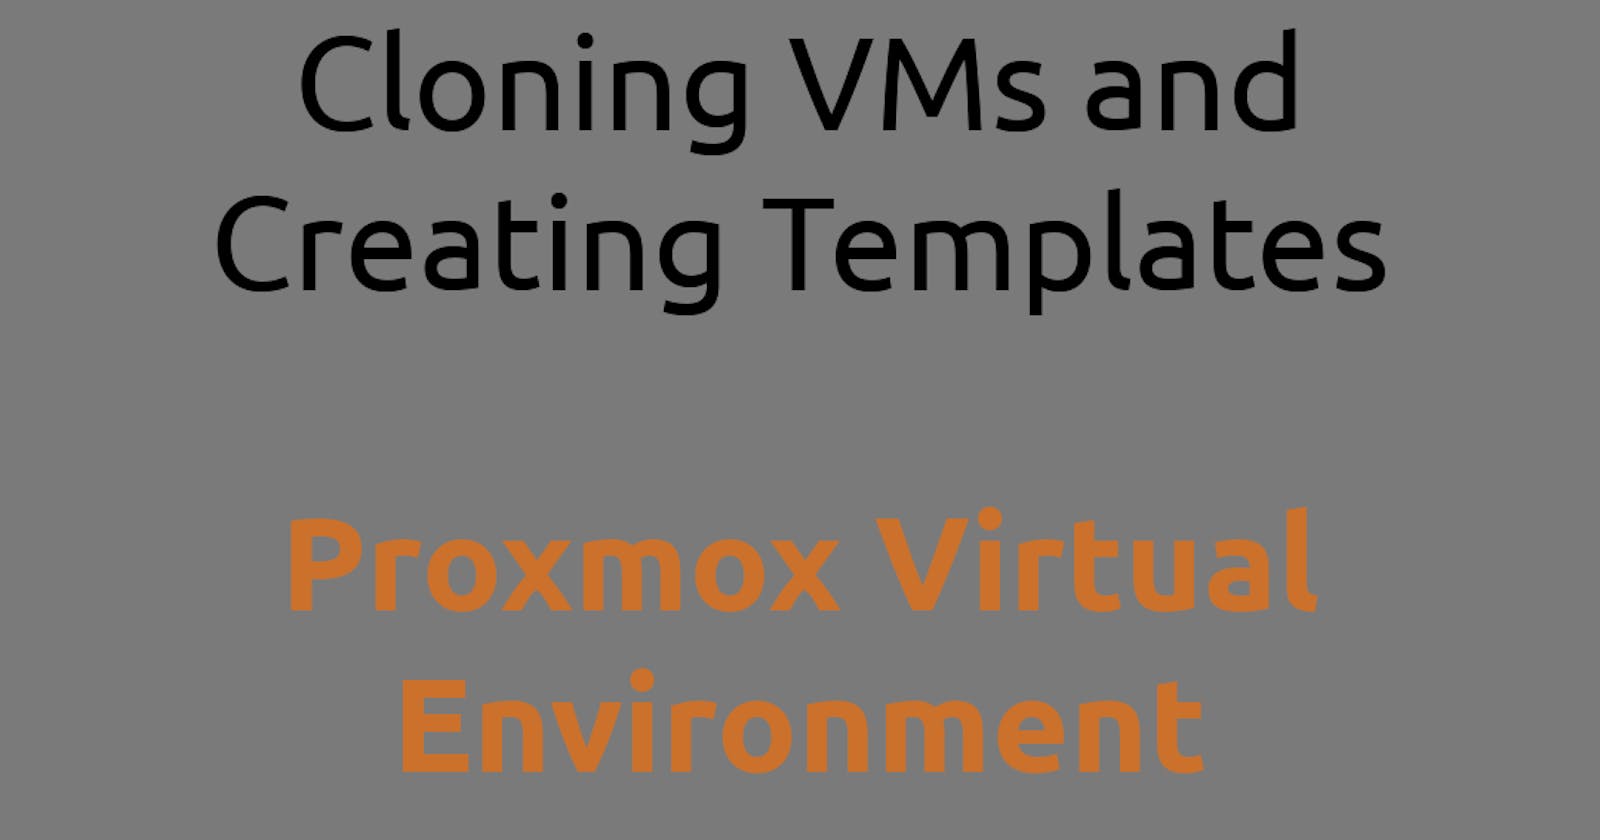 Proxmox Virtual Environment Cloning VMs and Creating Templates-Part 05